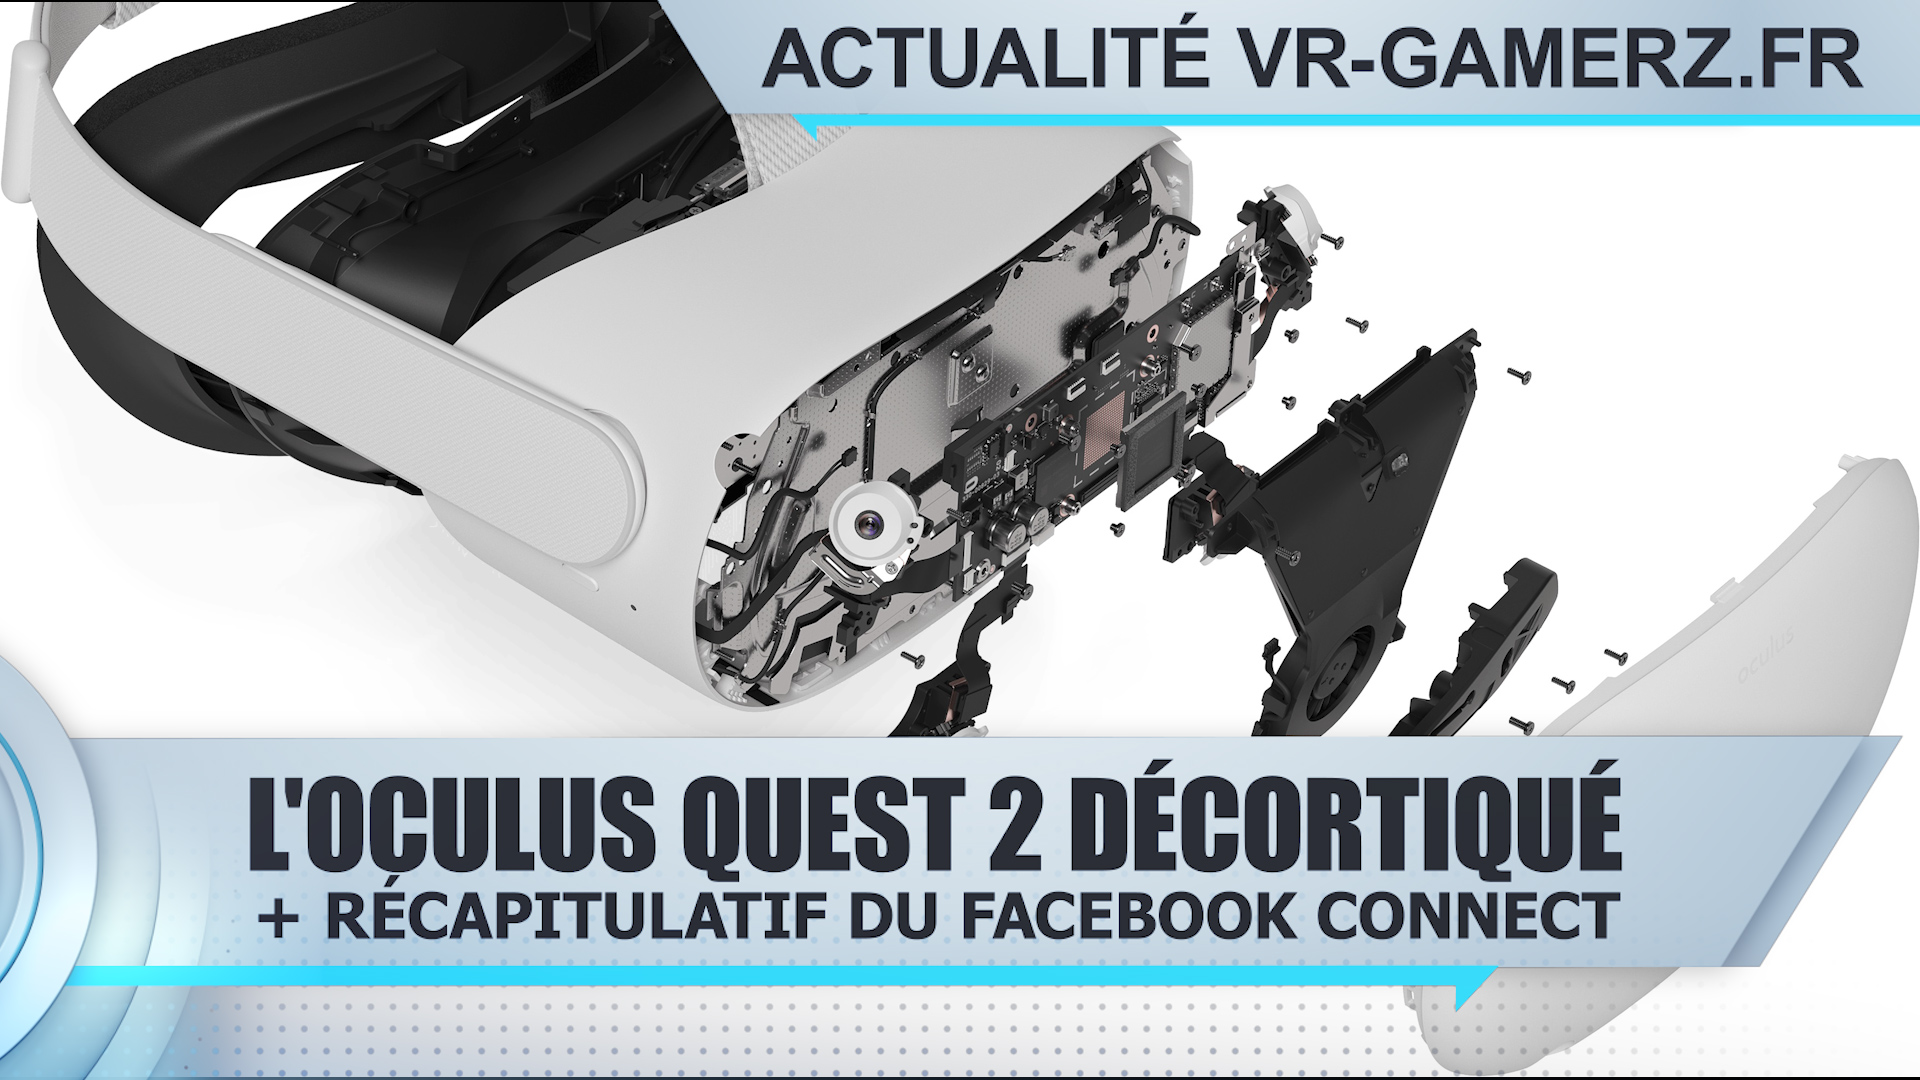 Oculus quest 2 : Le casque décortiqué + récapitulatif du Facebook connect !